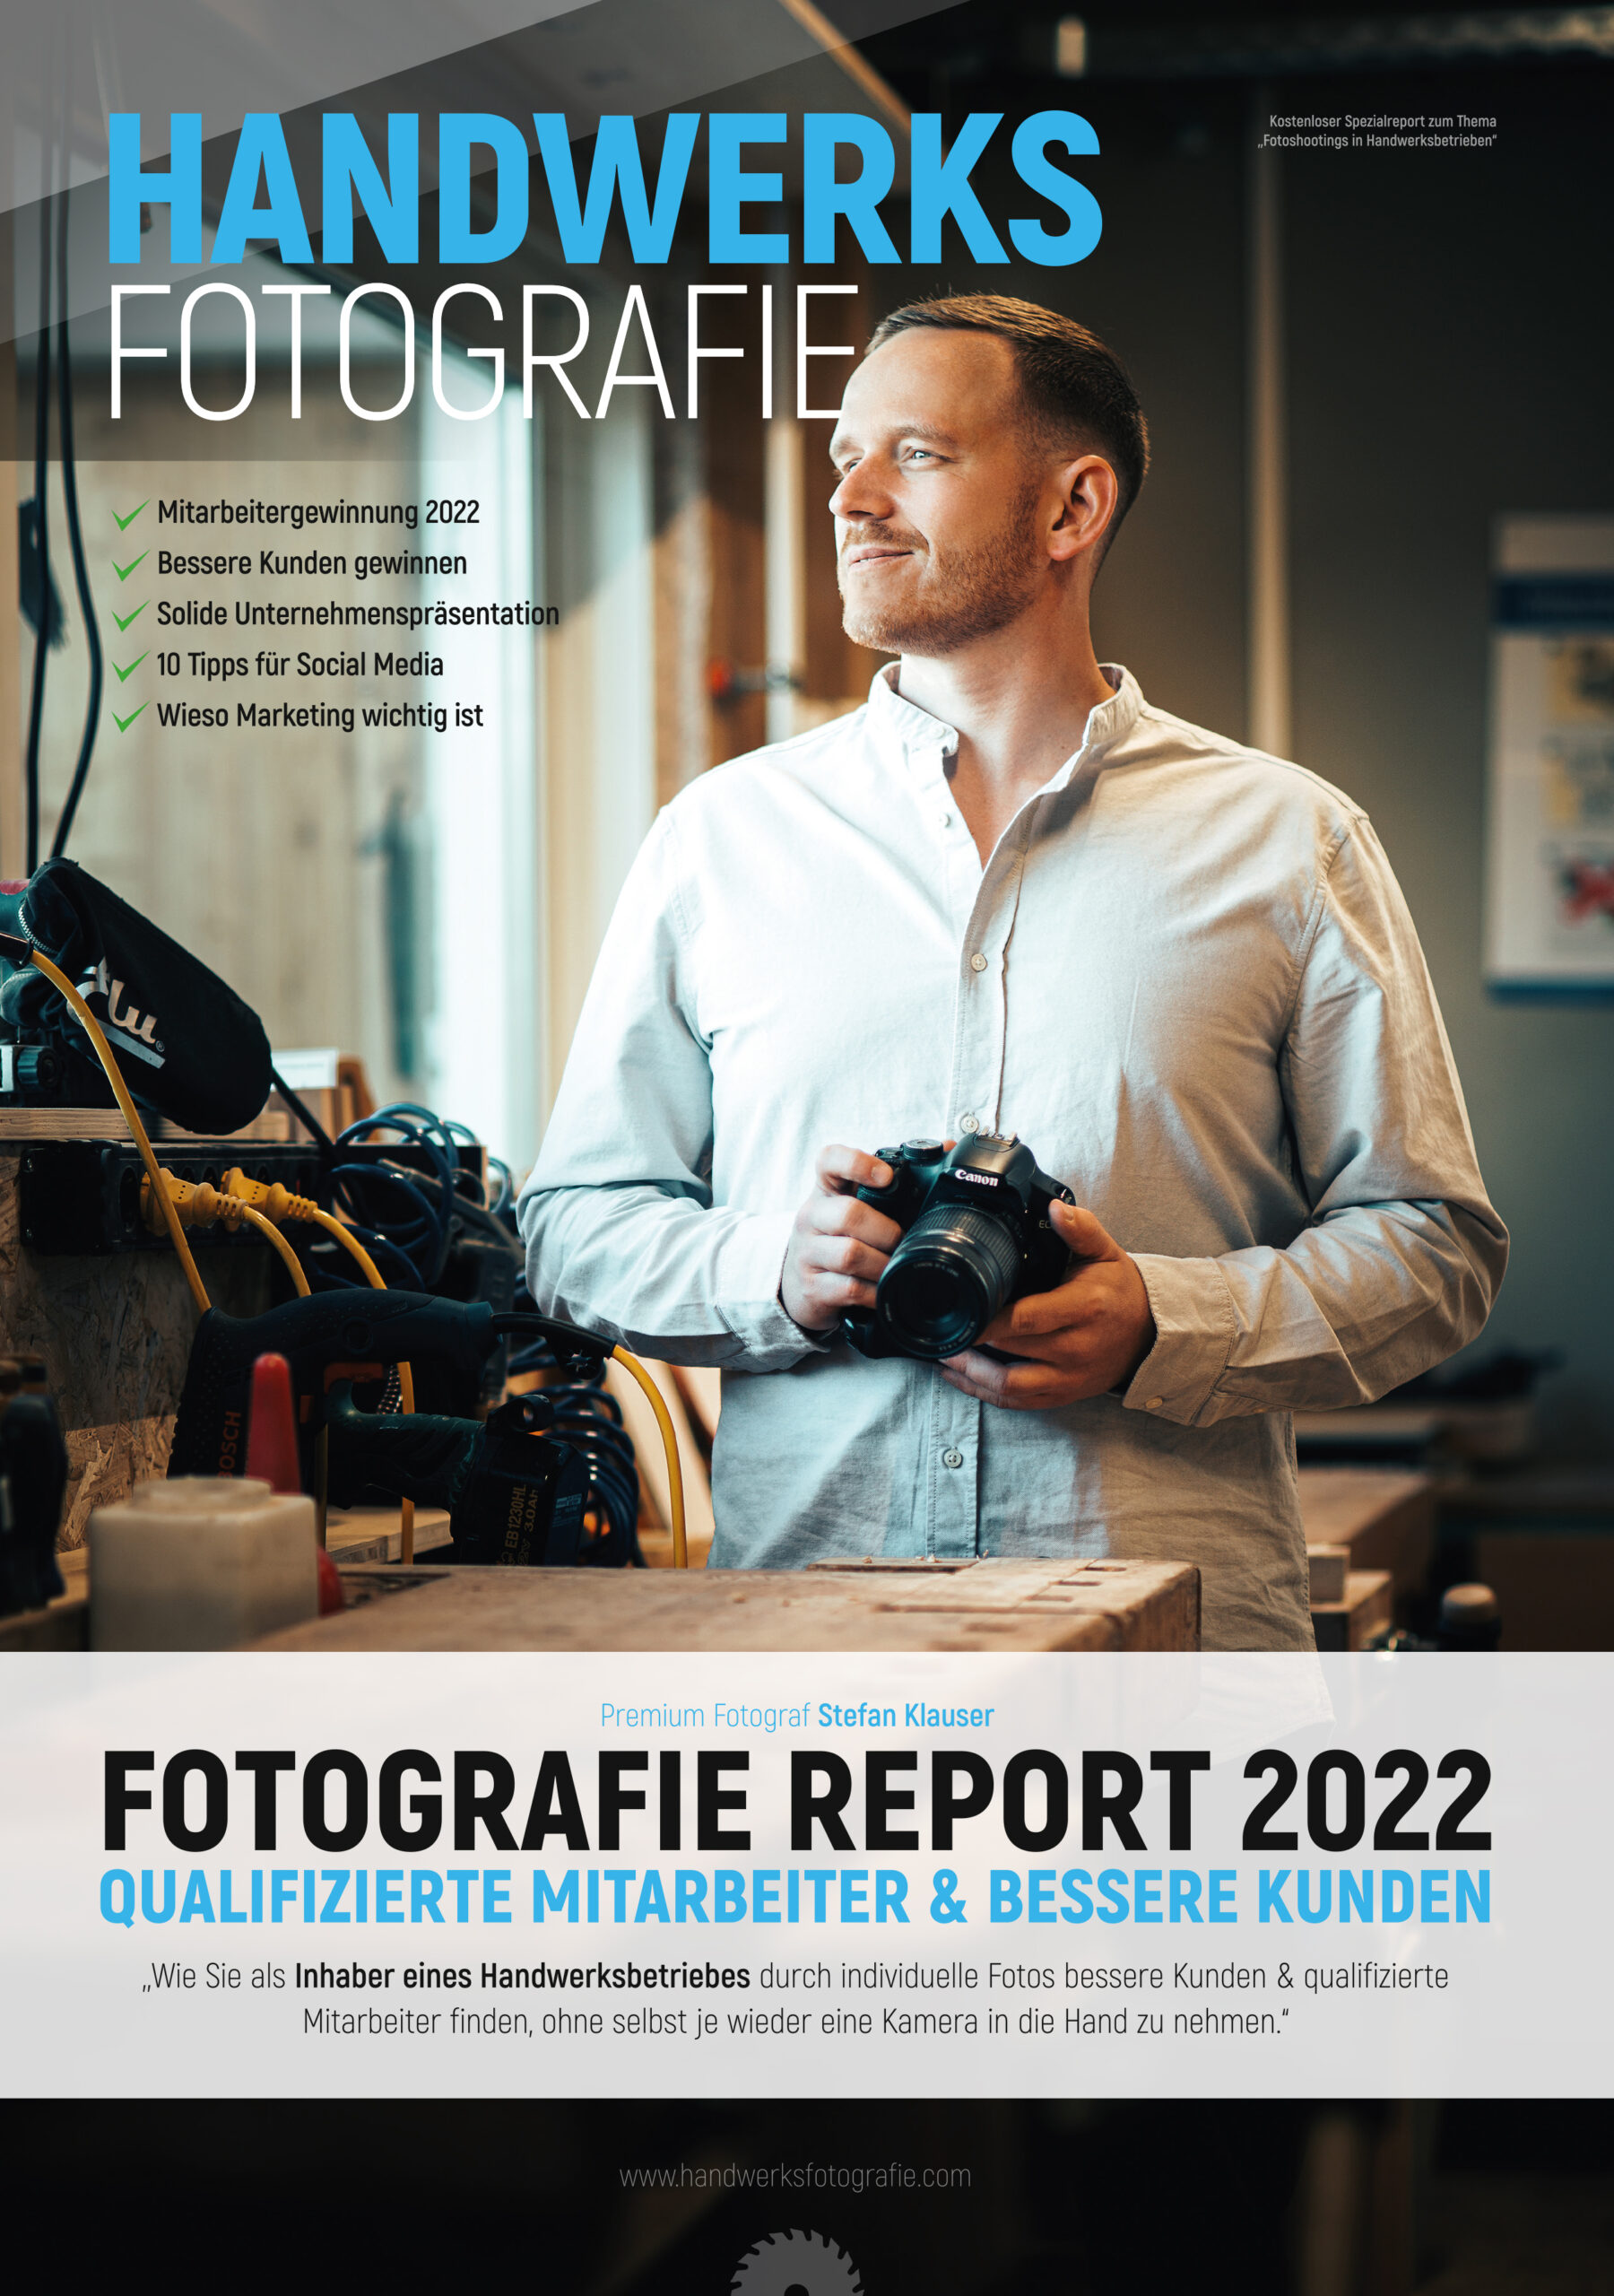 Handwerksfotografie Report 2022